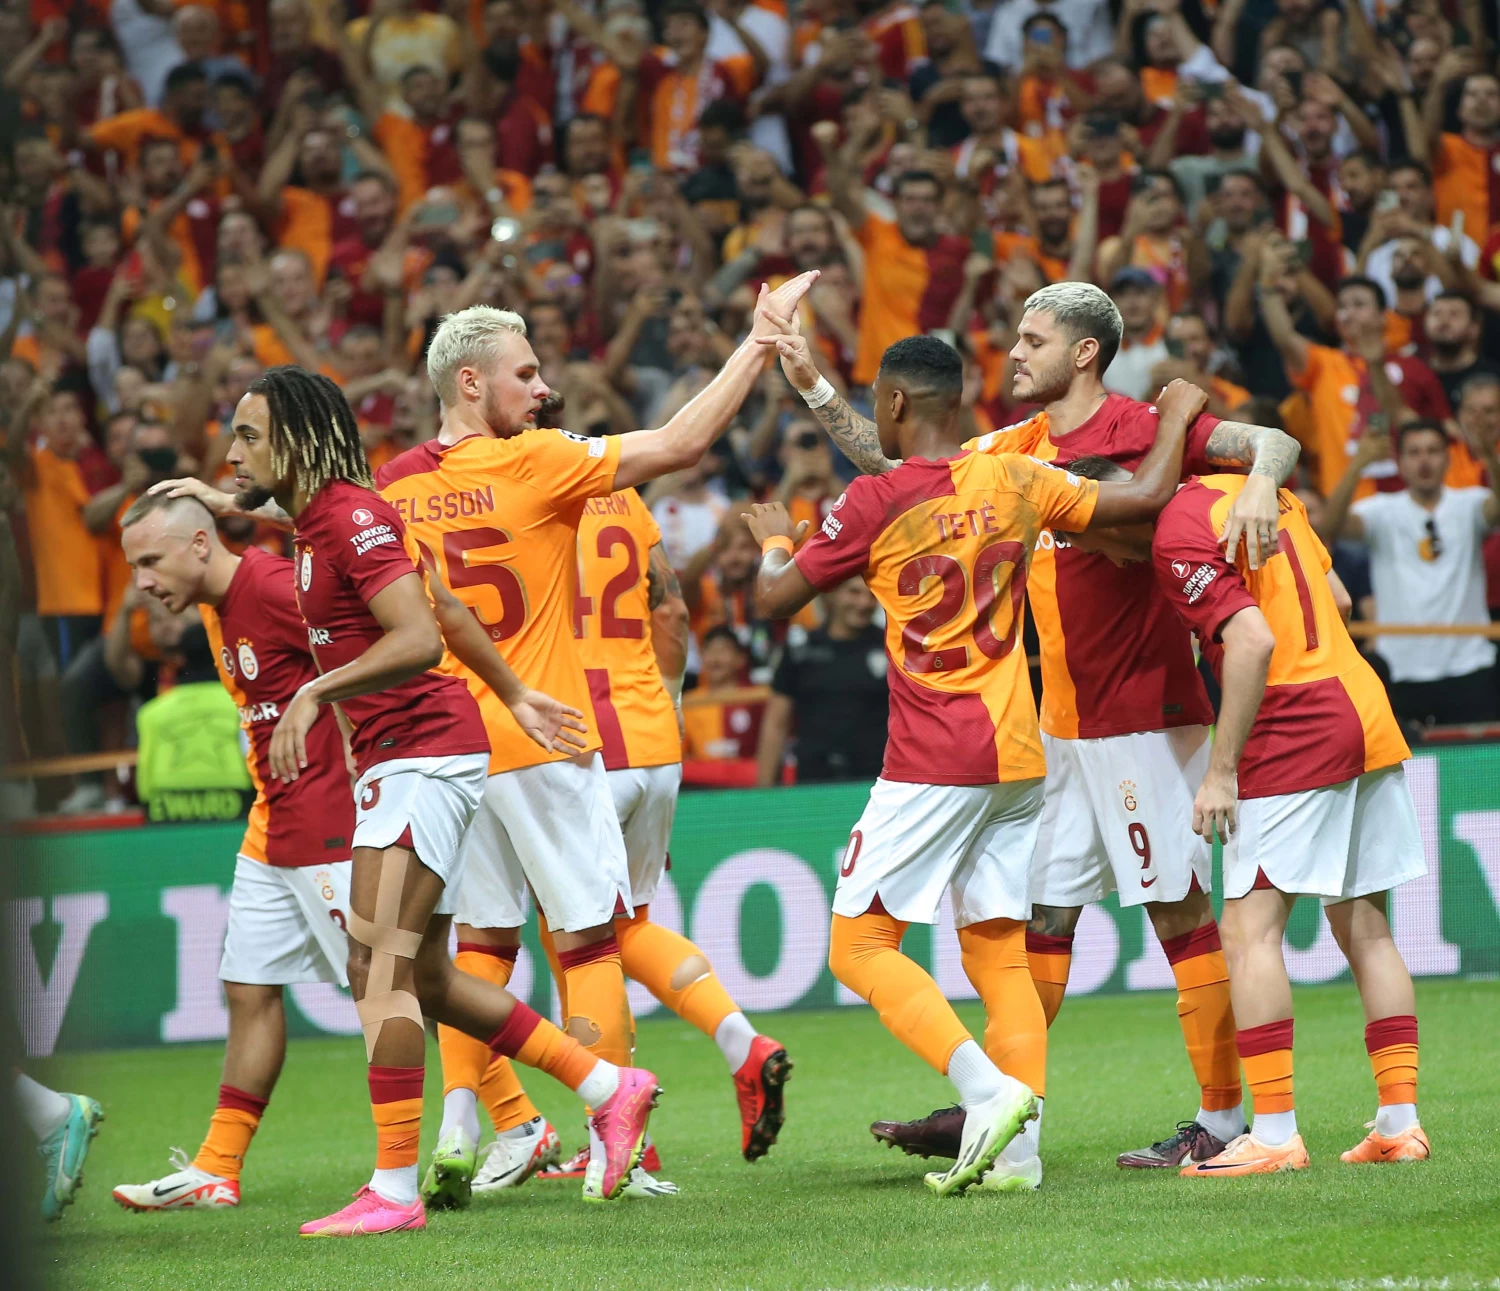 Galatasaray, Şampiyonlar Ligi'nde adını gruplara yazdırdı